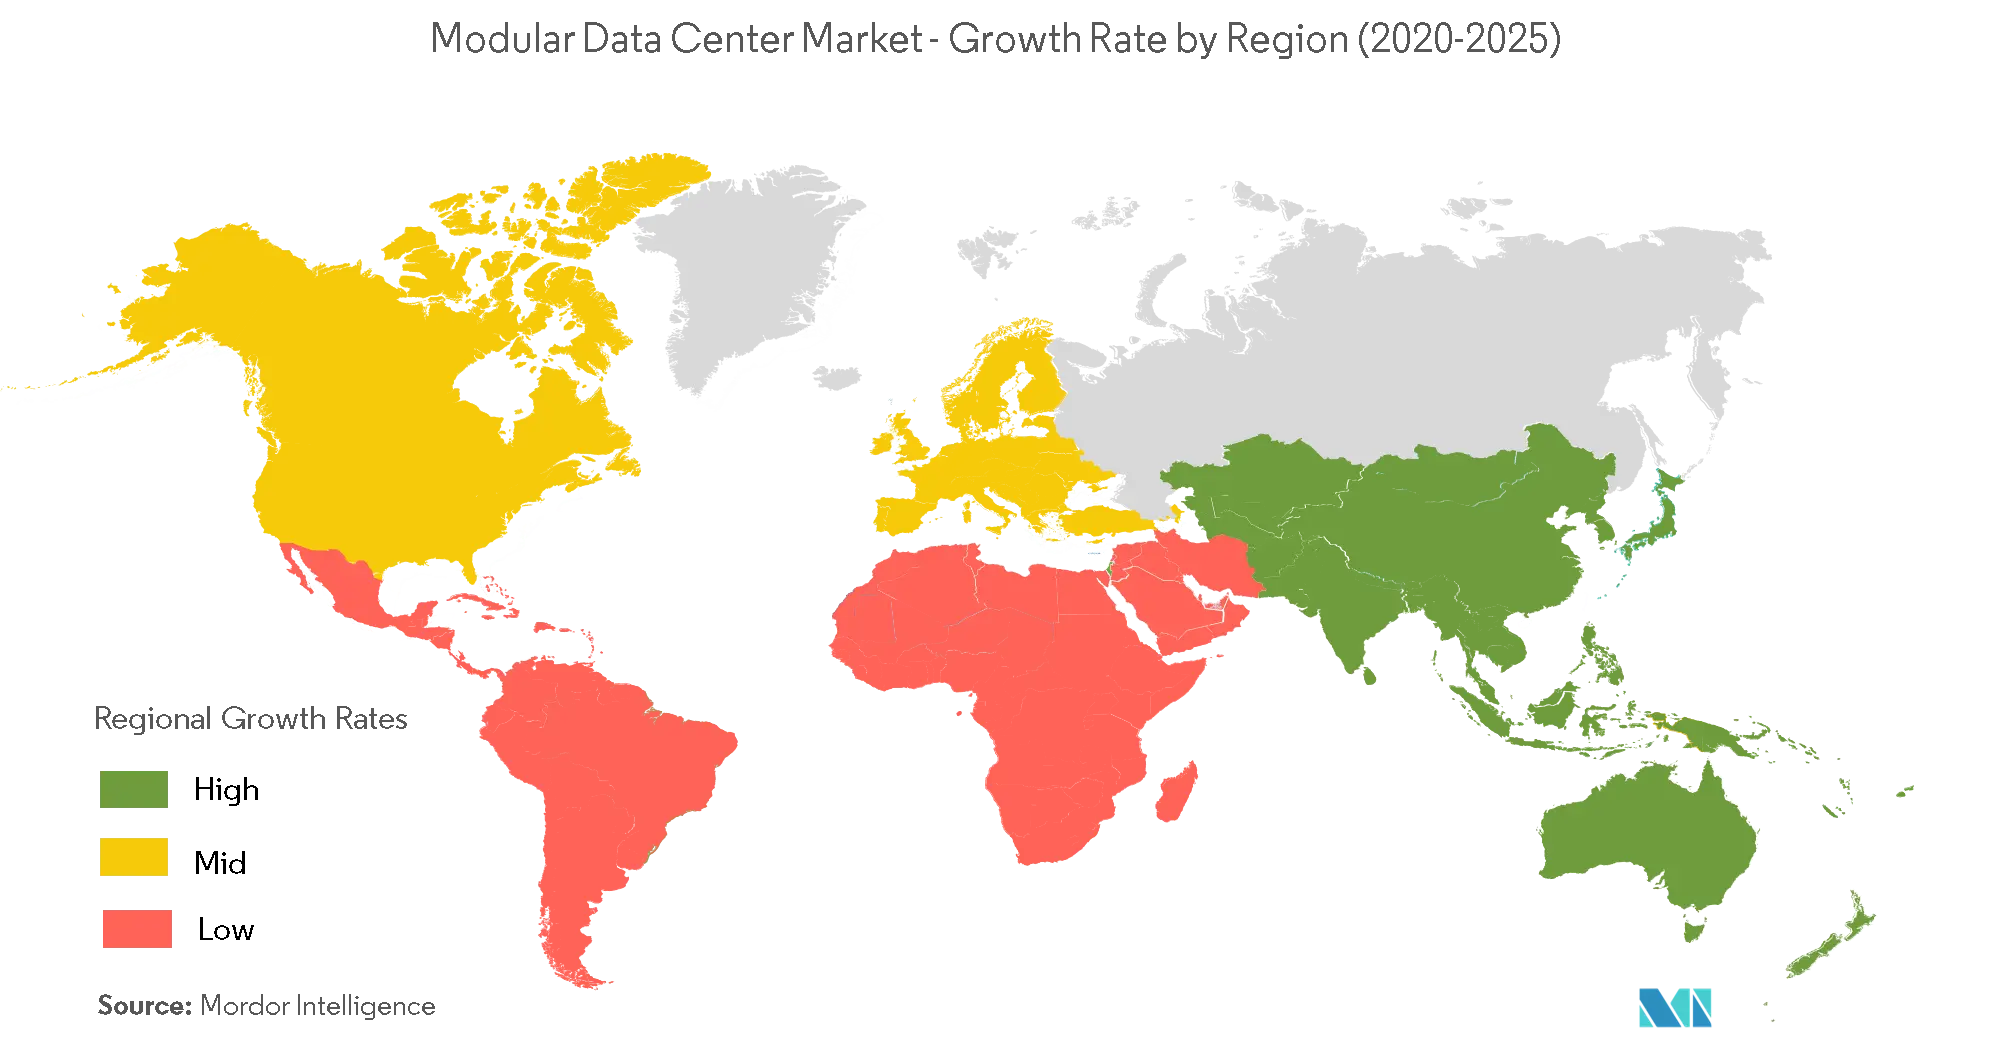 Modular Data Center Market Share